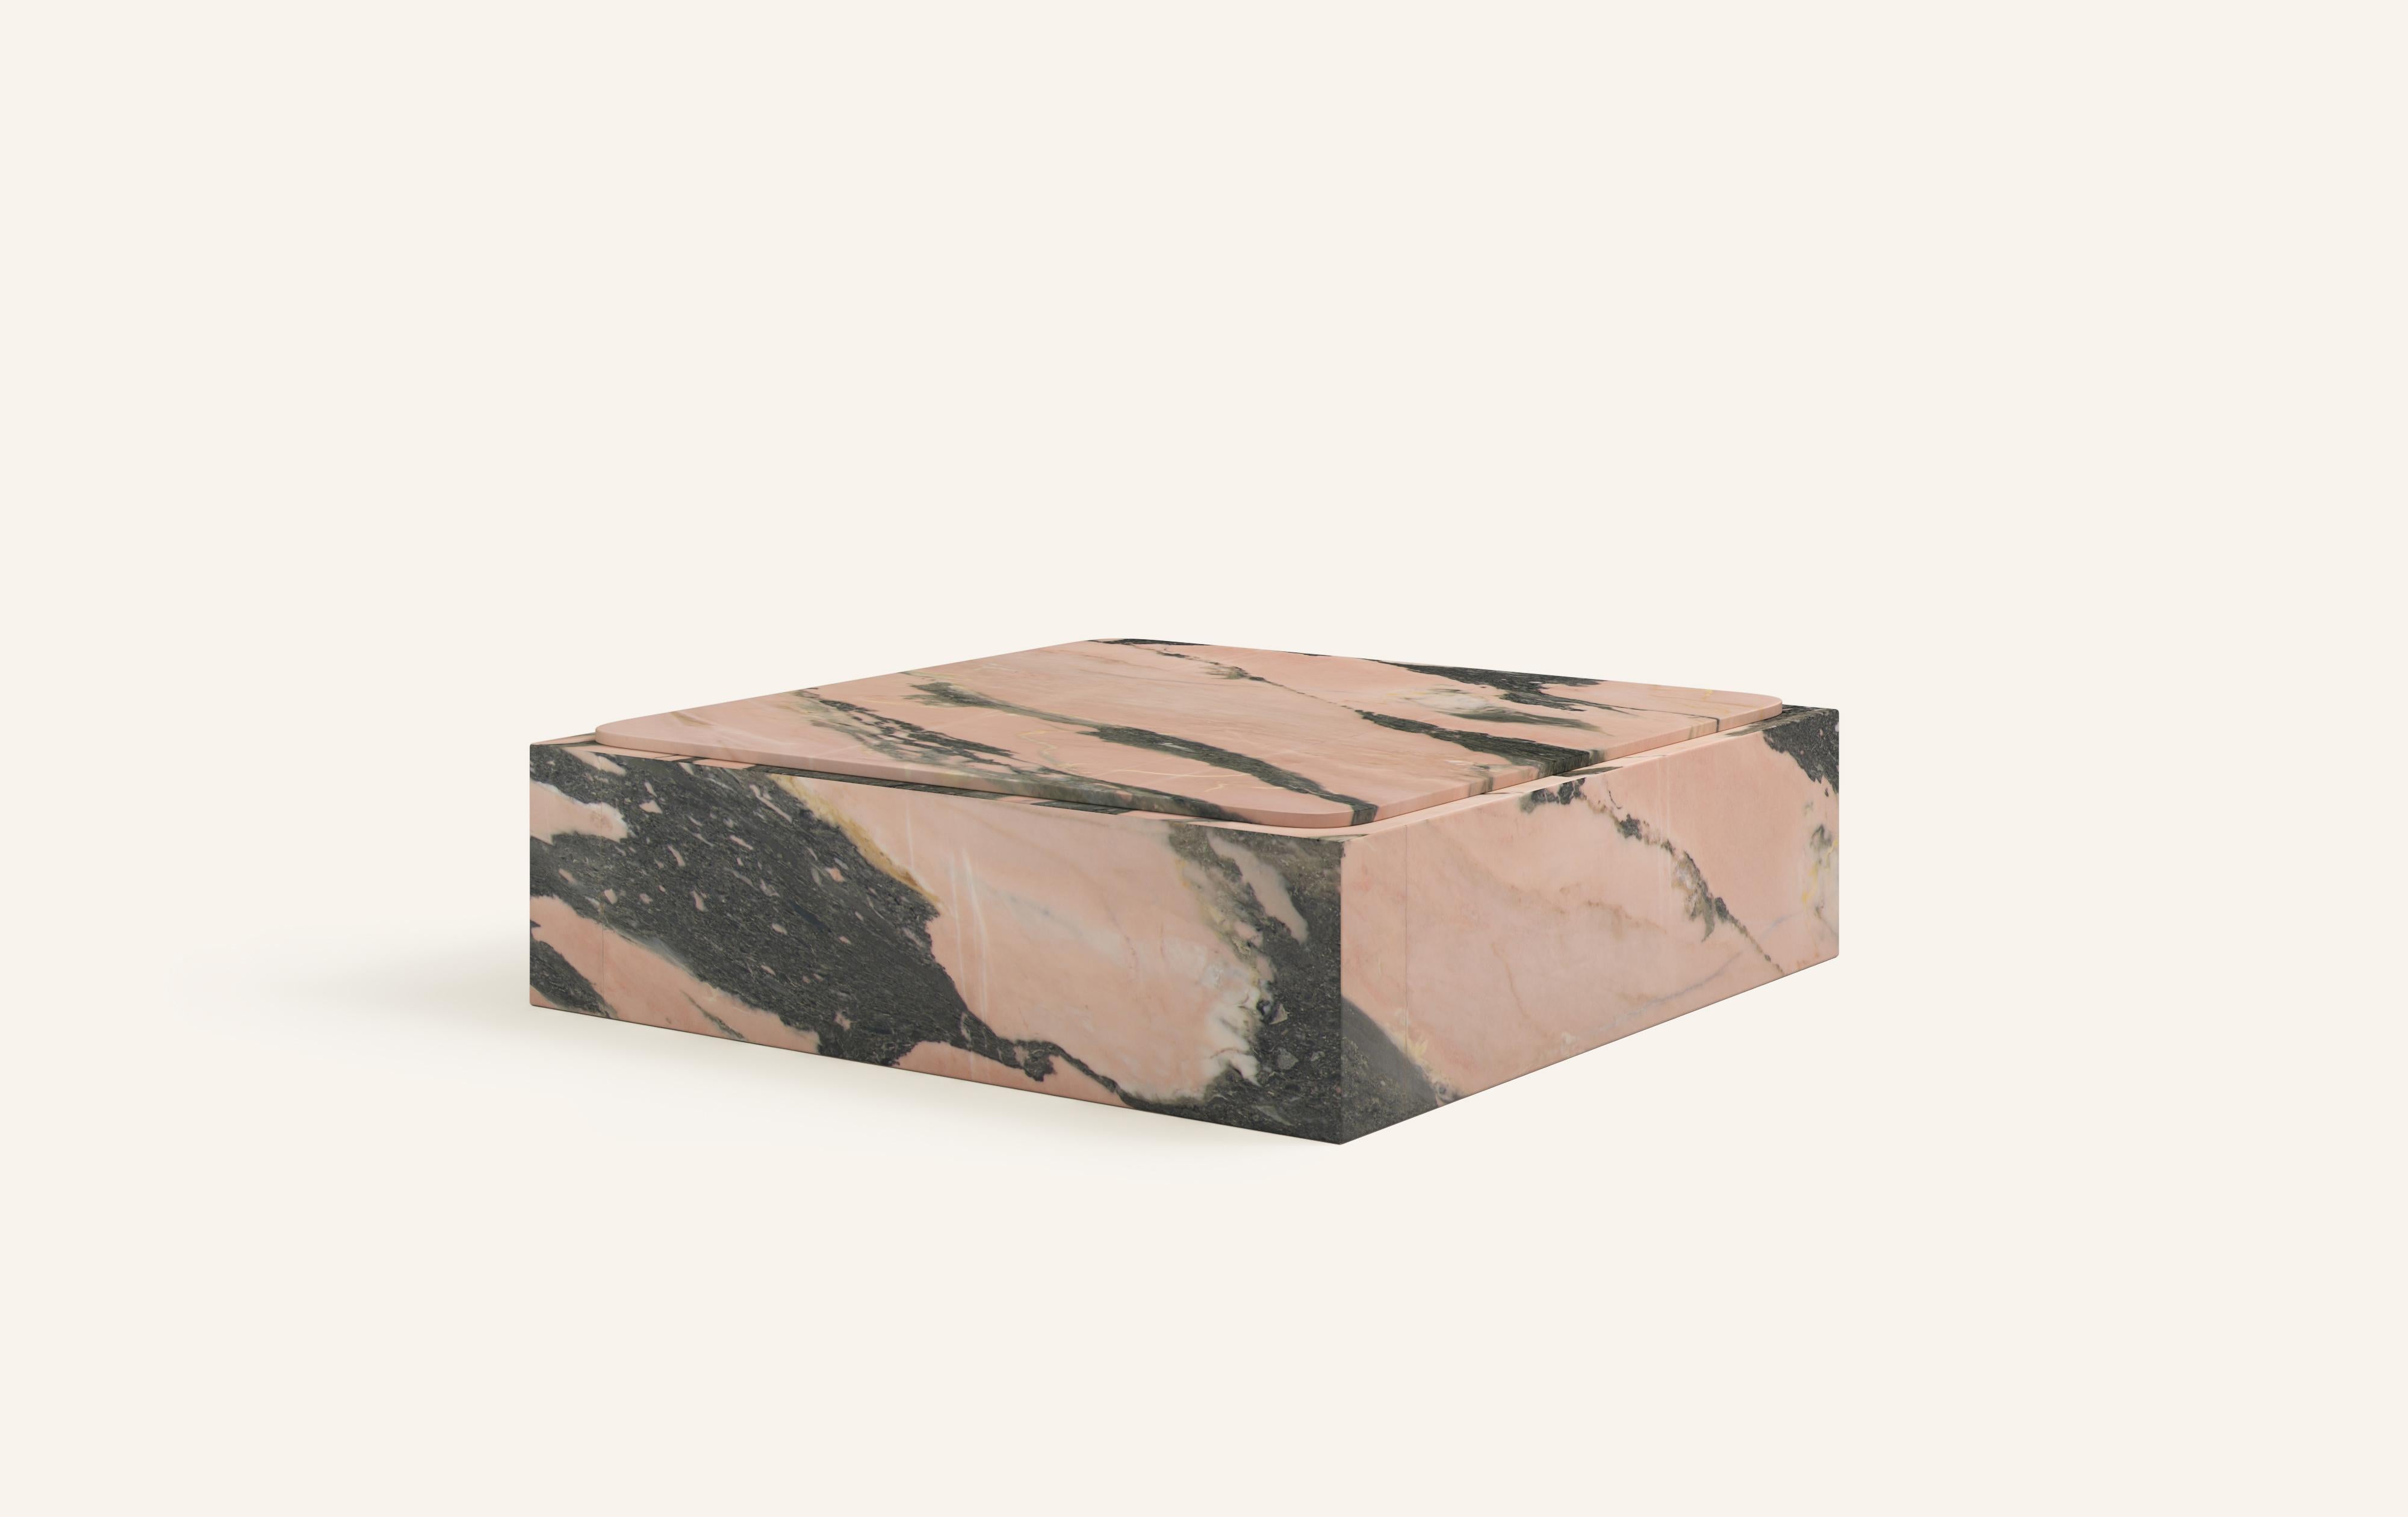 Organic Modern FORM(LA) Cubo Square Plinth Coffee Table 54”L x 54”W x 13”H Portogallo Marble For Sale